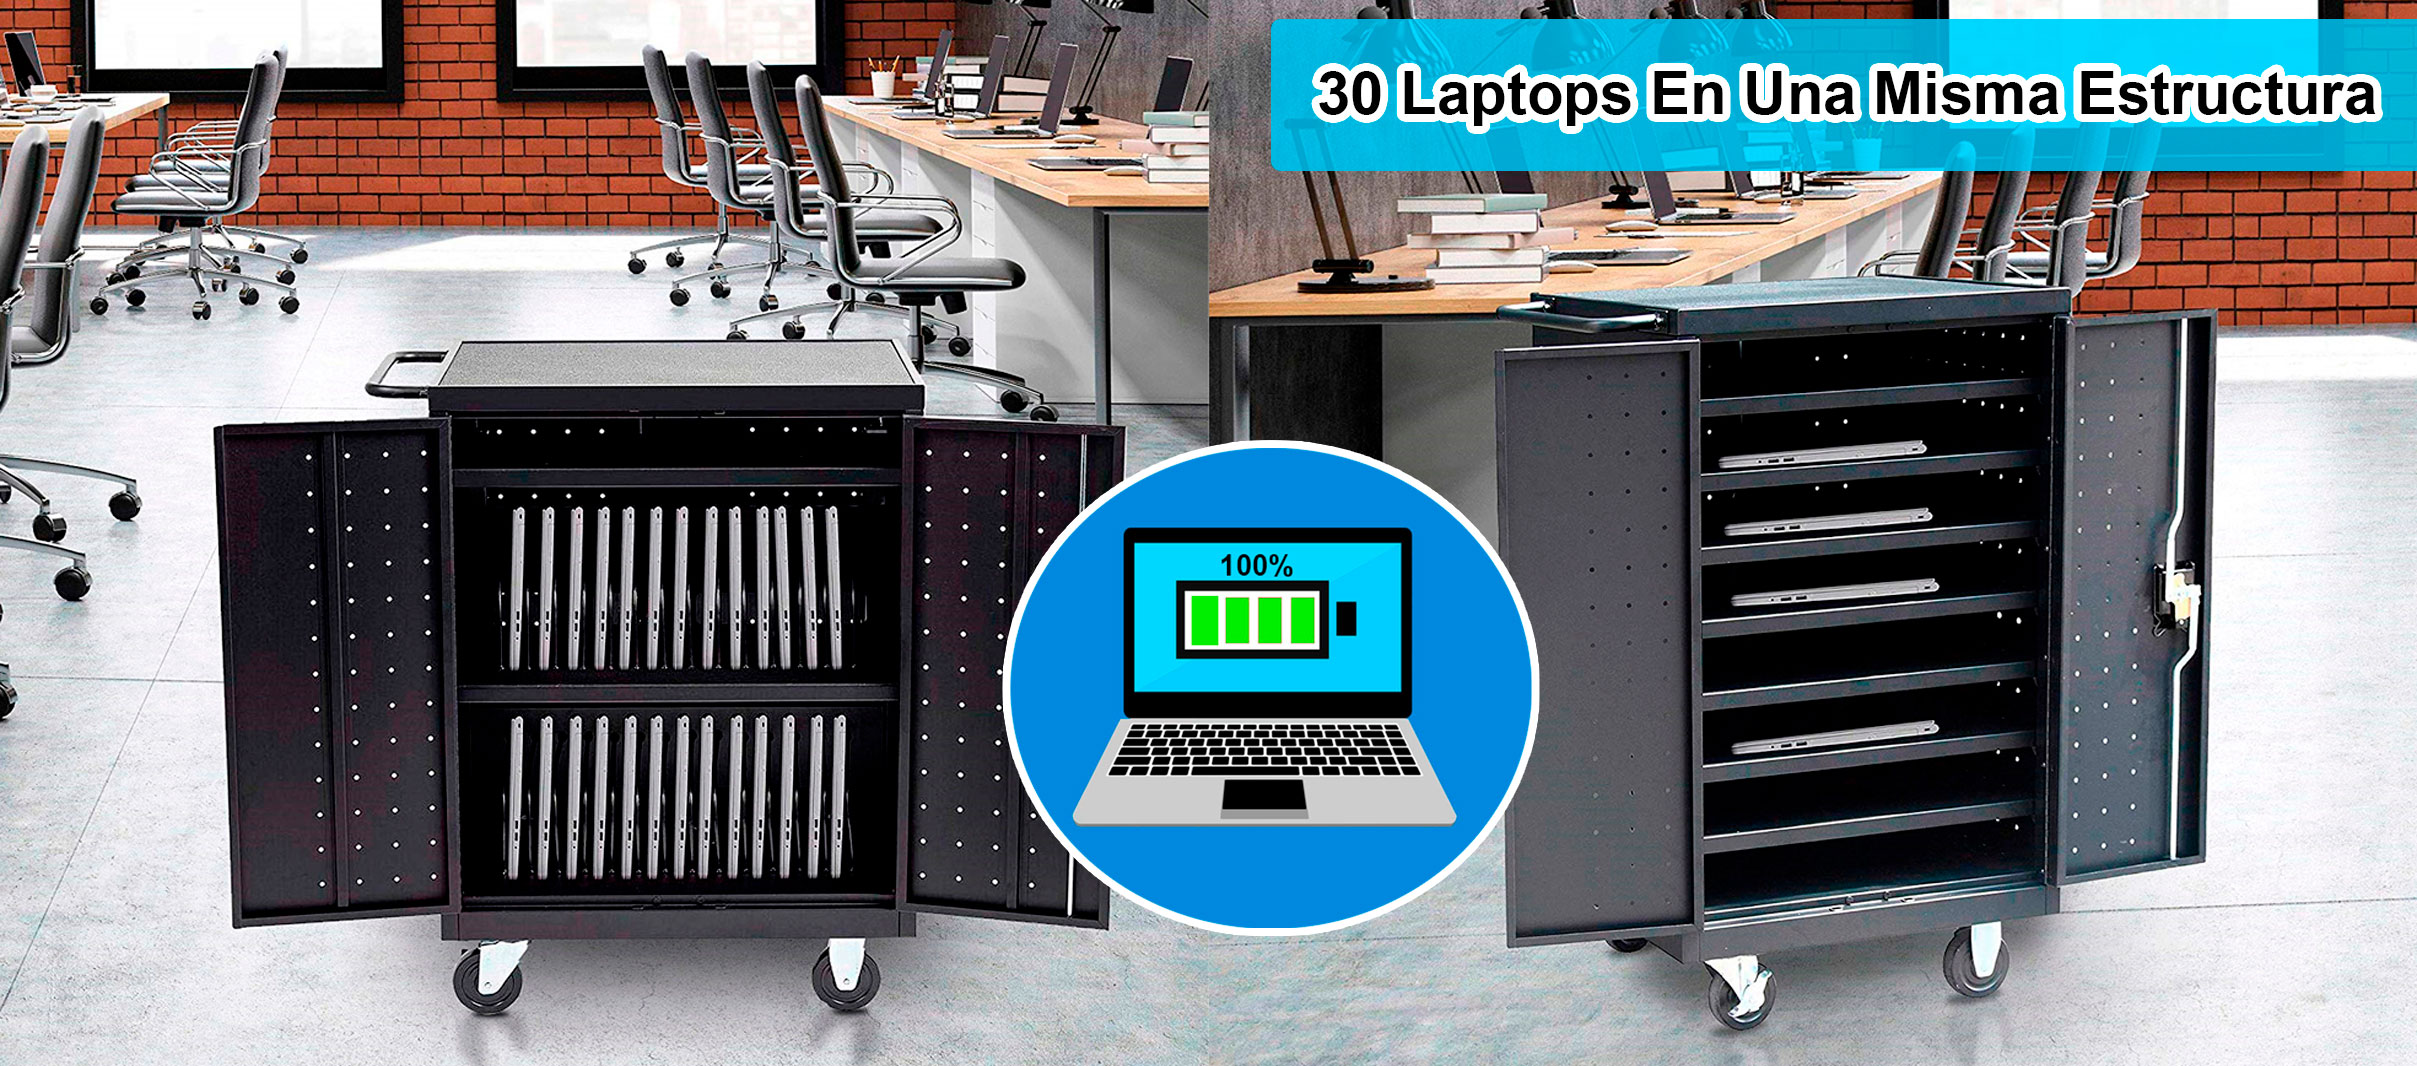 estacion de carga para 30 computadores portatiles